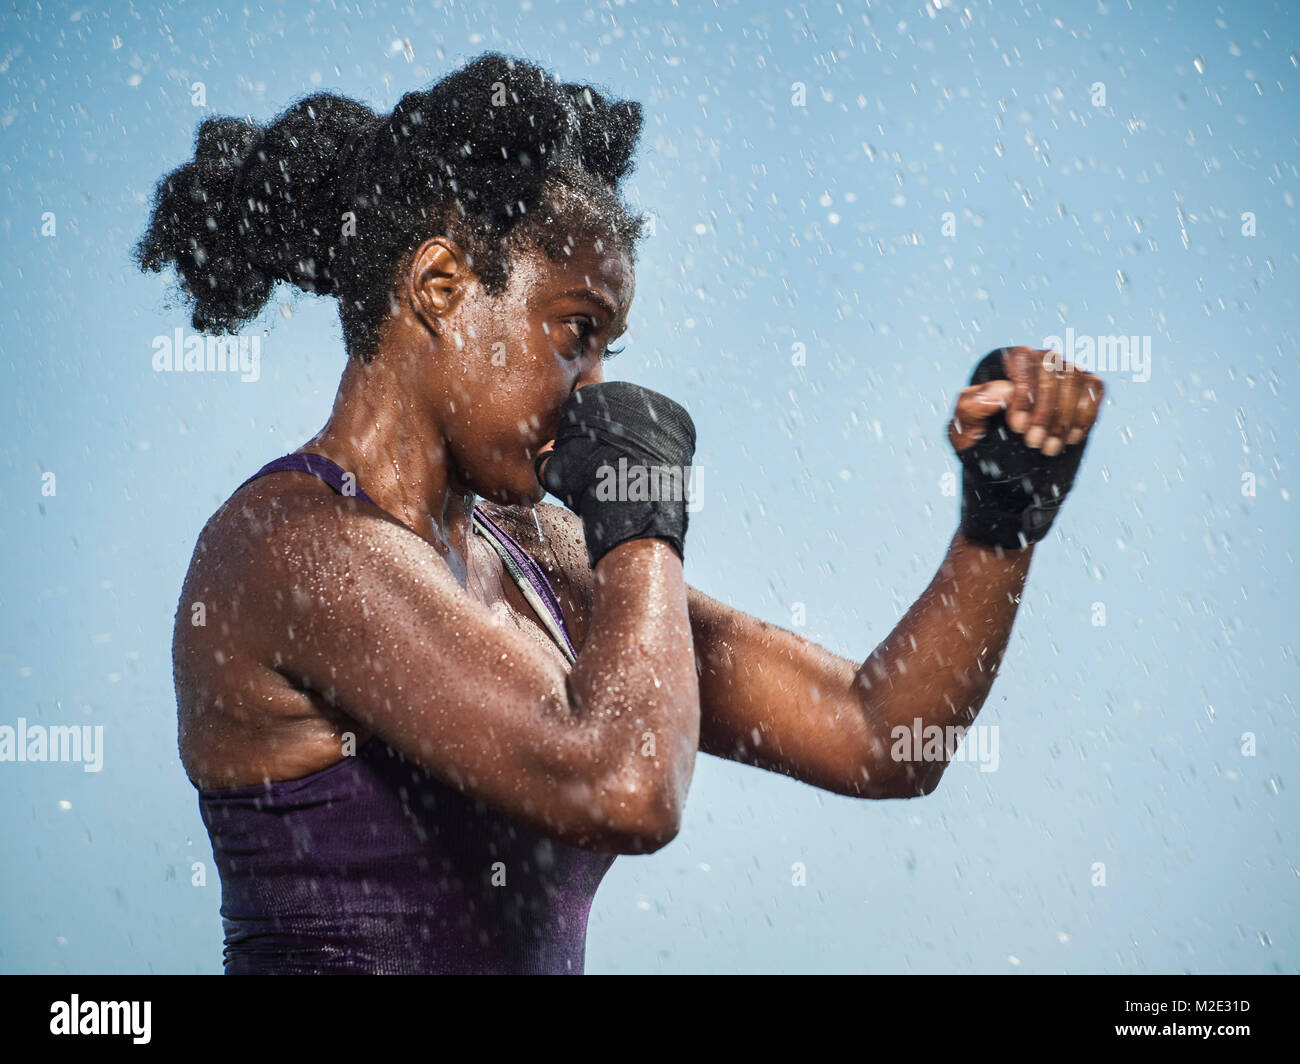 Water splashing on sparring Black woman Stock Photo